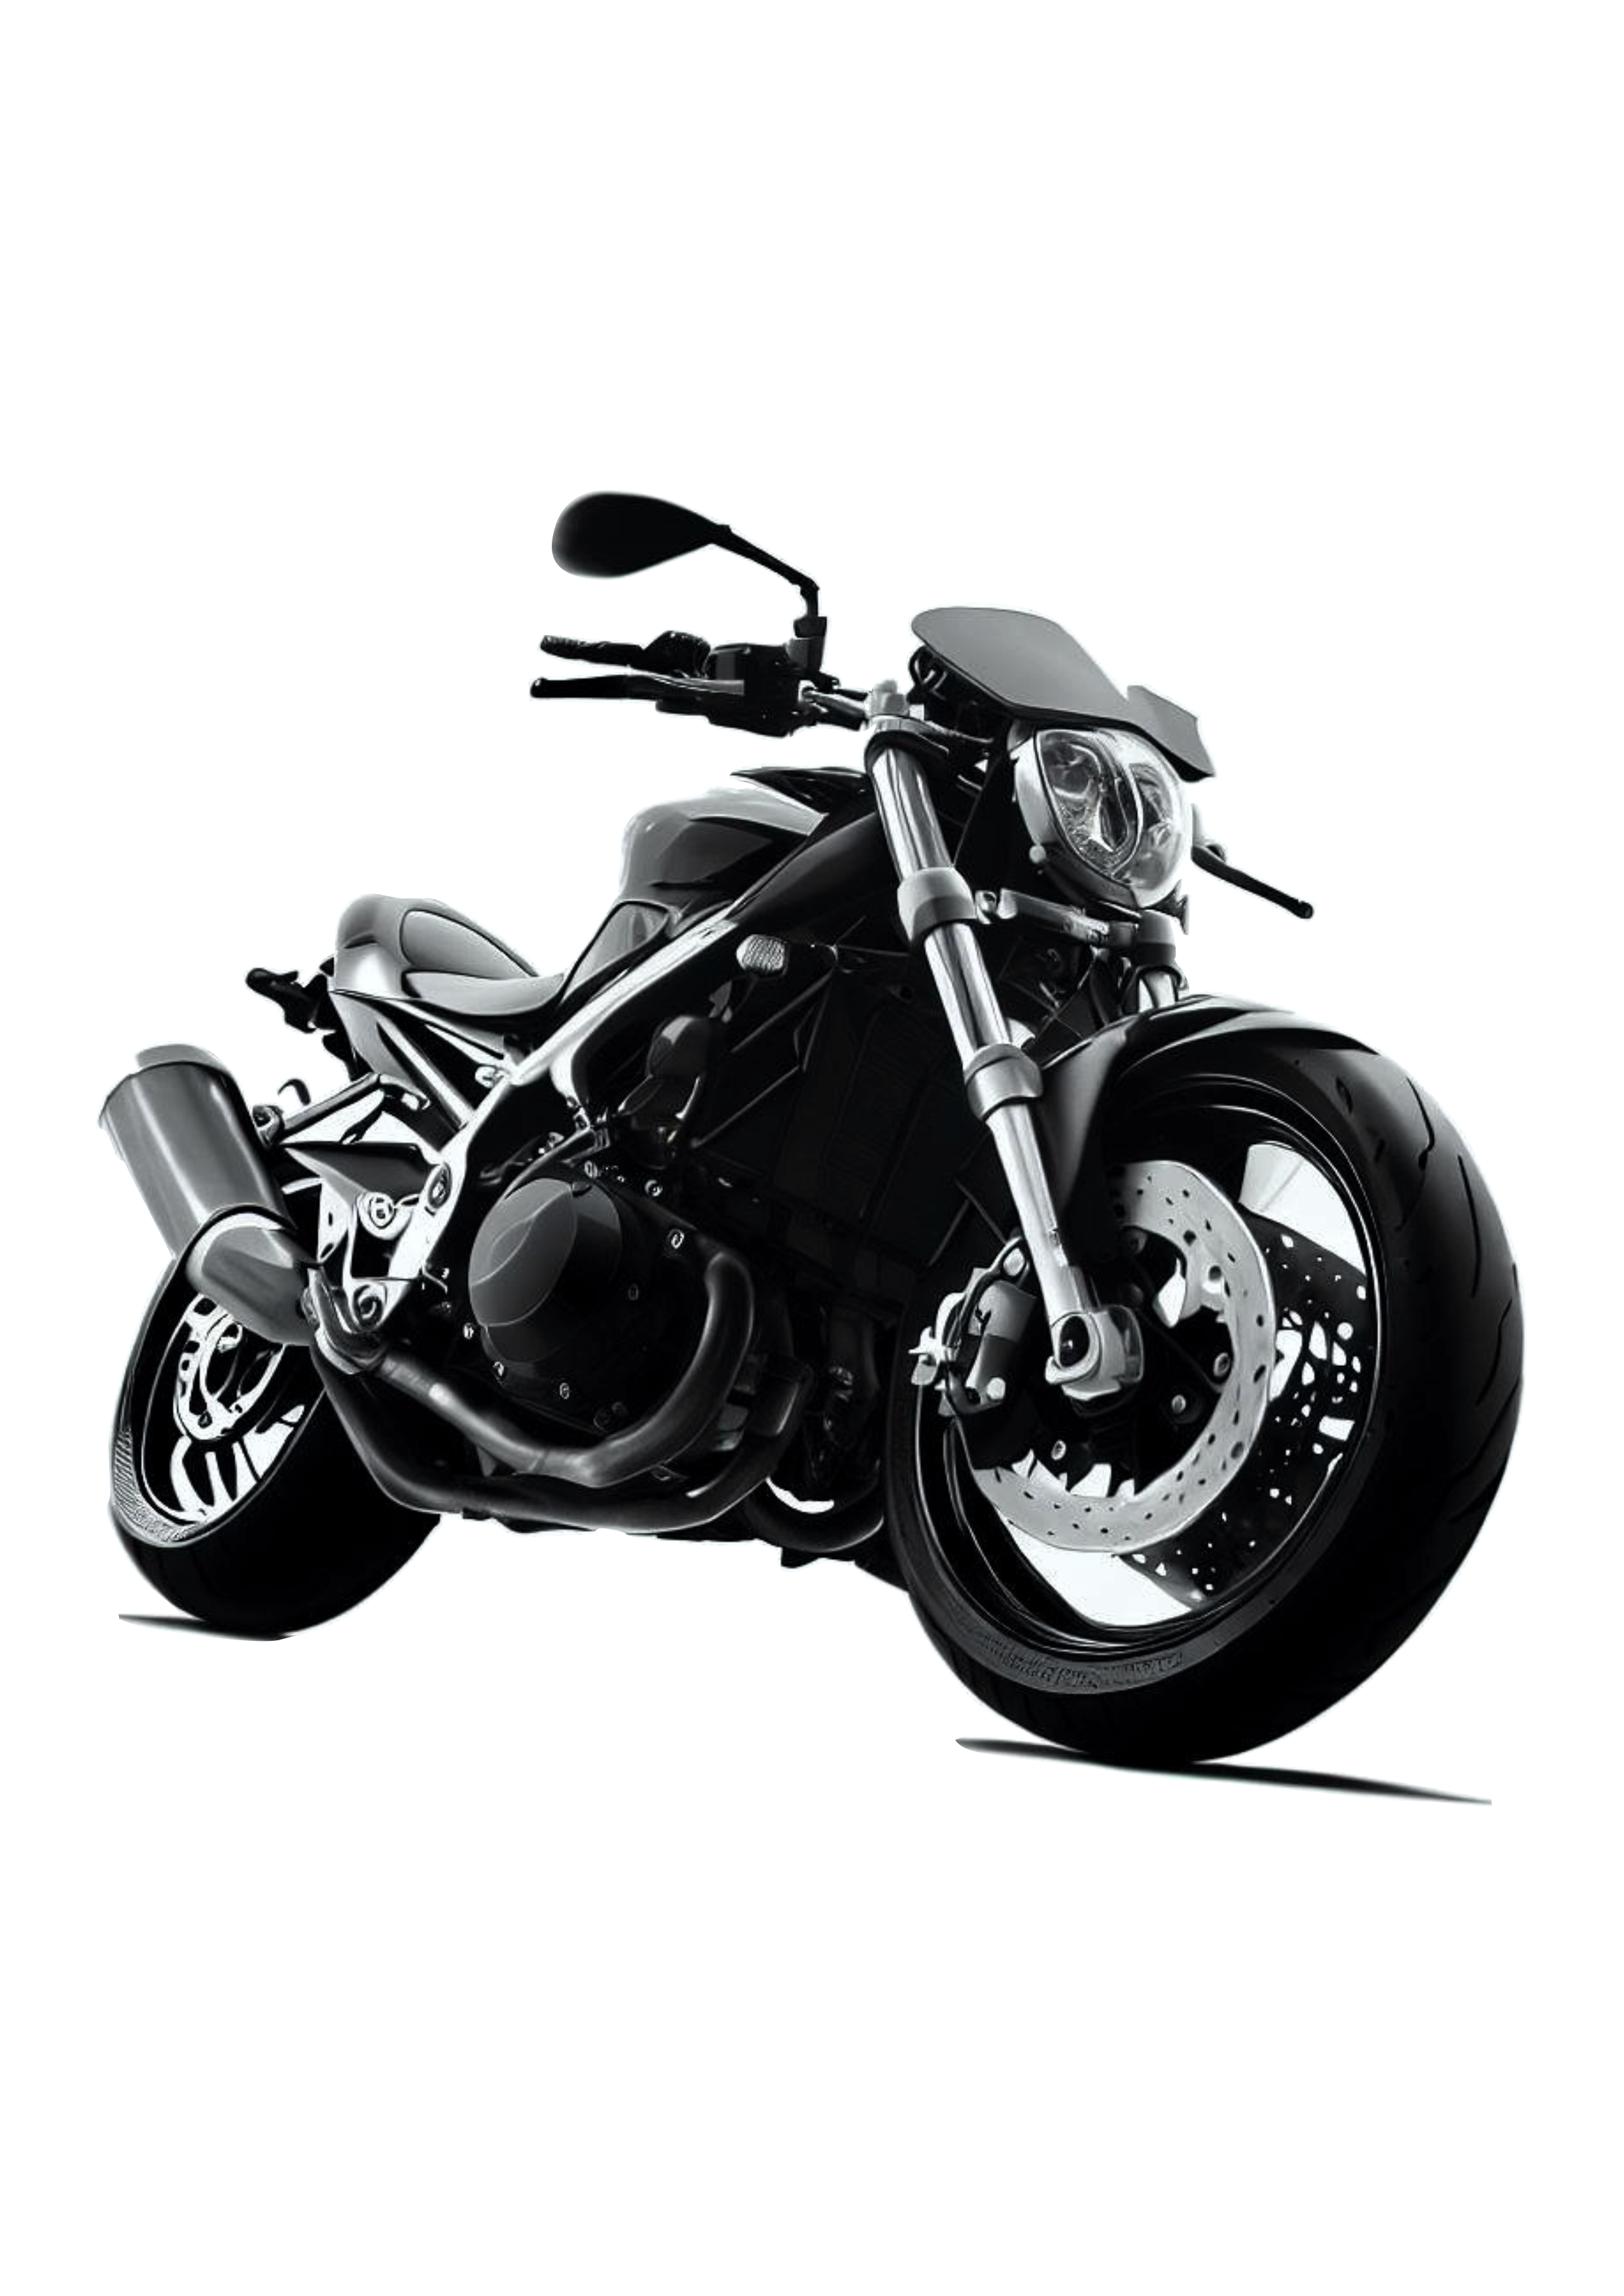 Moto esportiva imagem conceitual veículo automotivo acessórios de motocicleta png